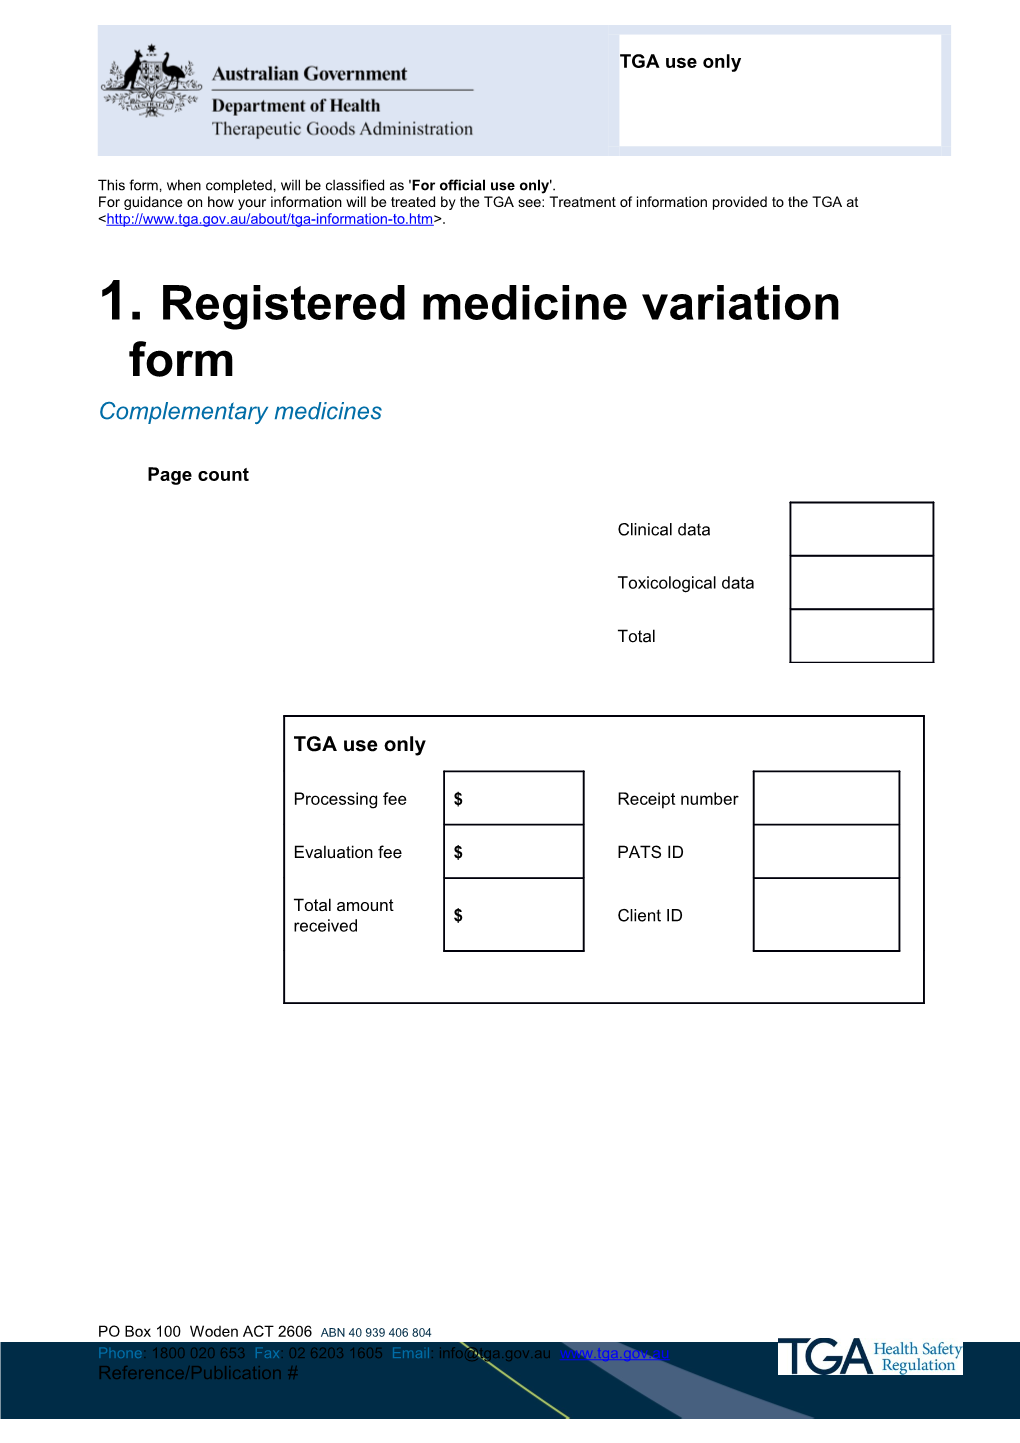 Registered Medicine Variation Form (Complementary Medicines)